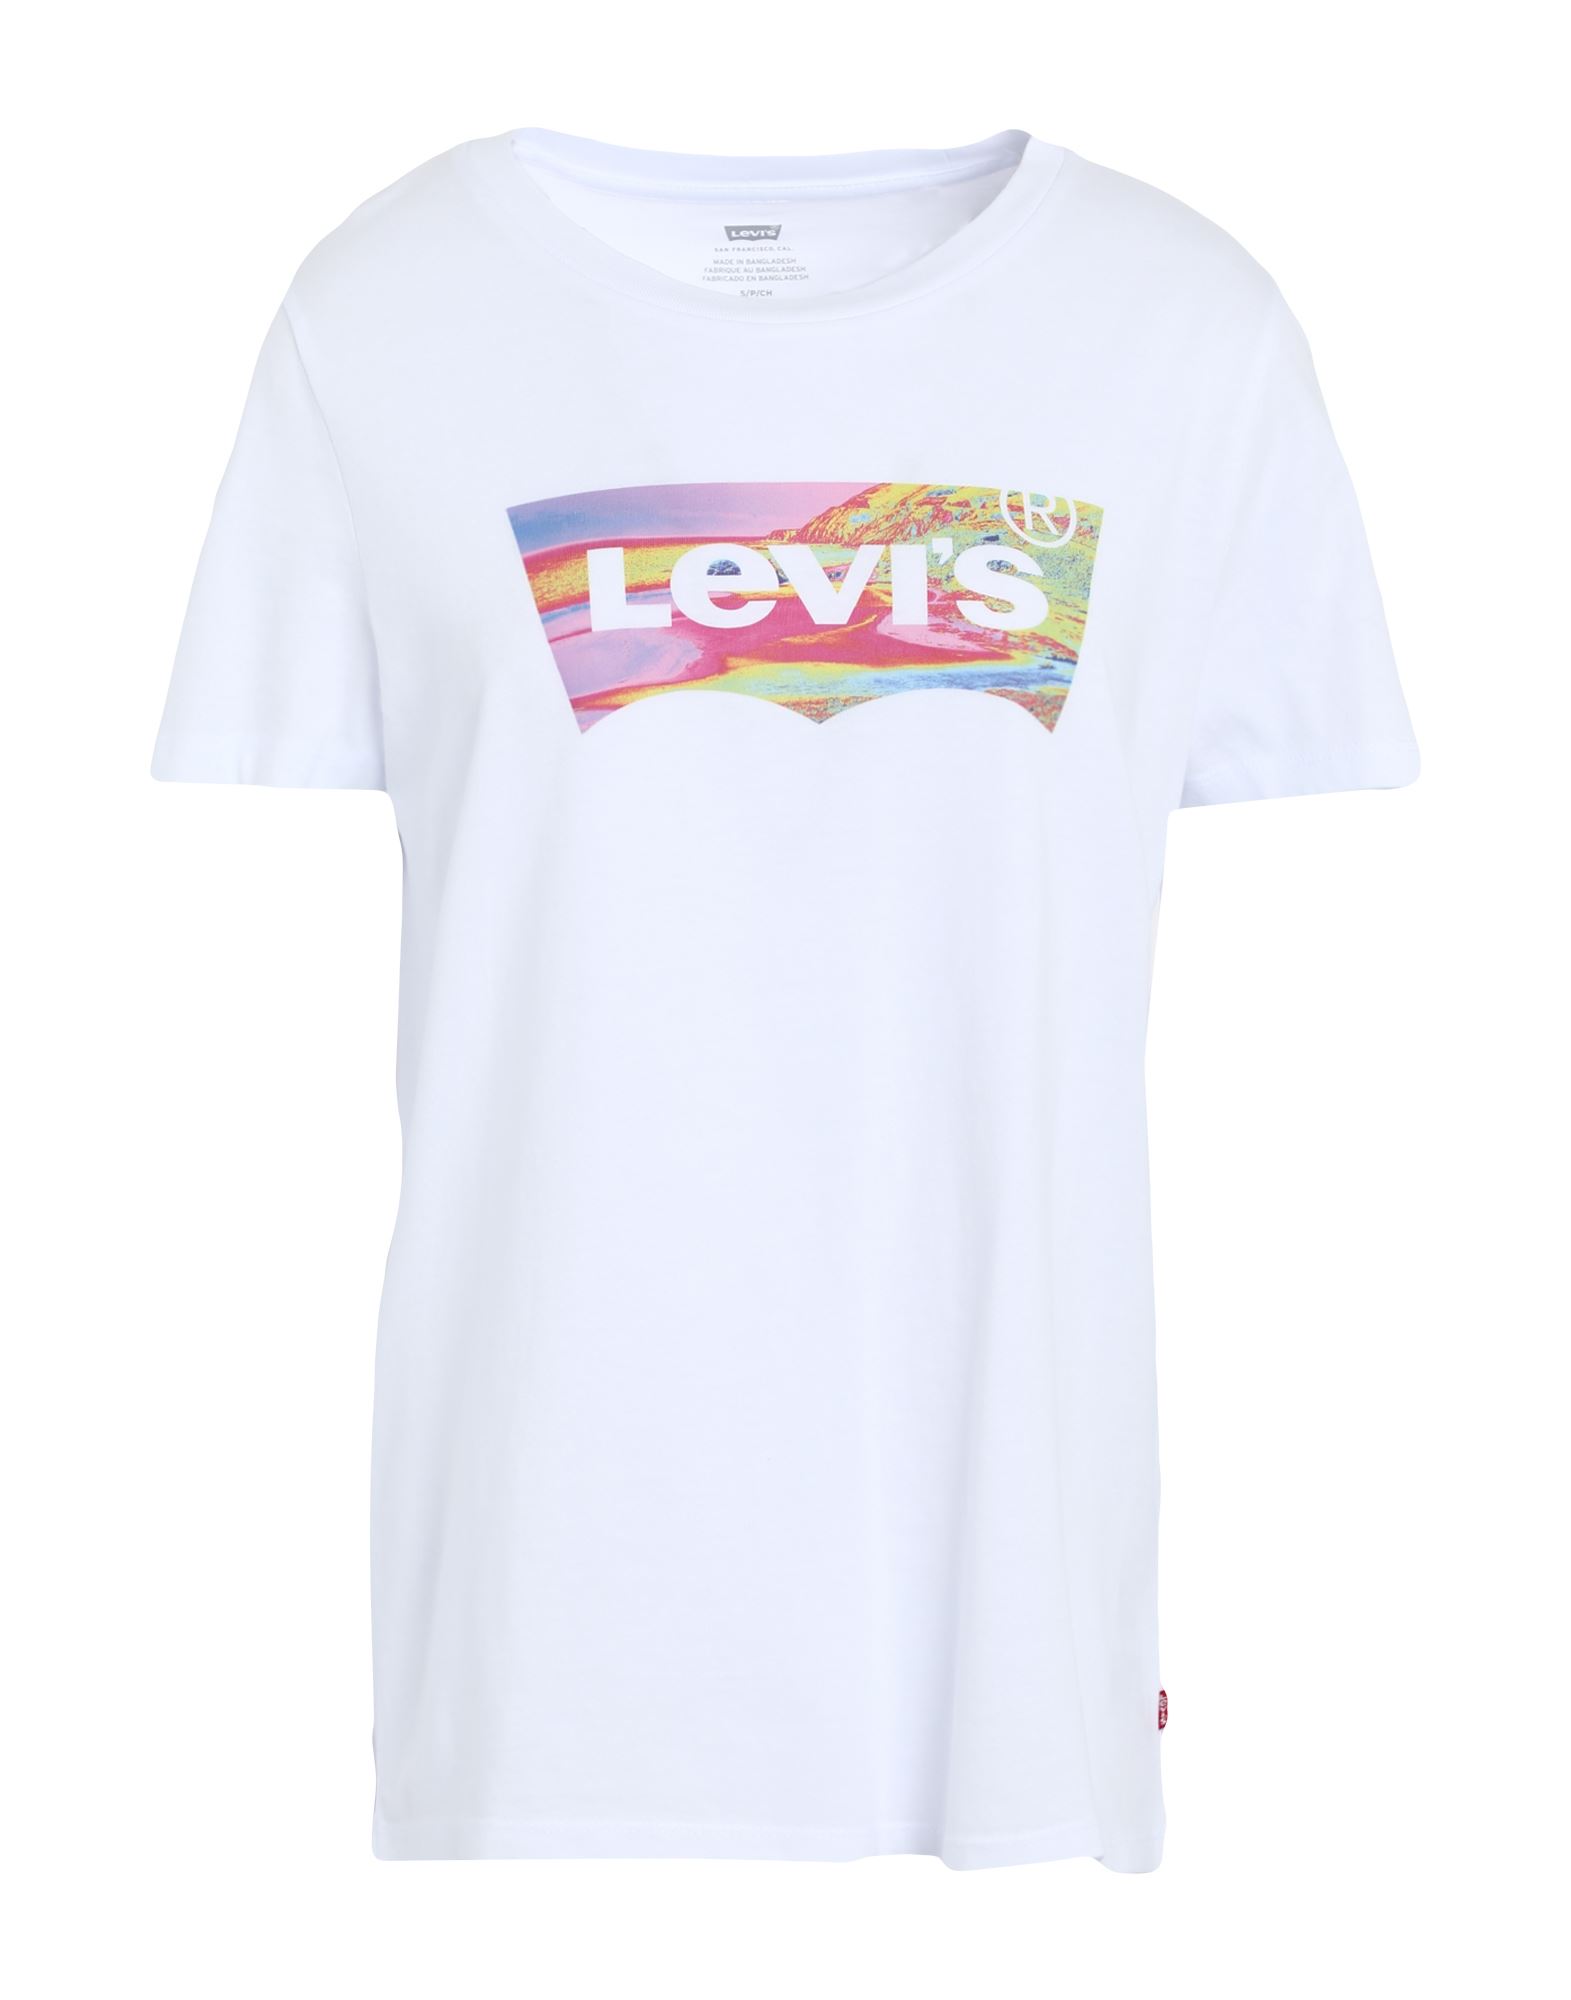 LEVI'S T-shirts Damen Weiß von LEVI'S